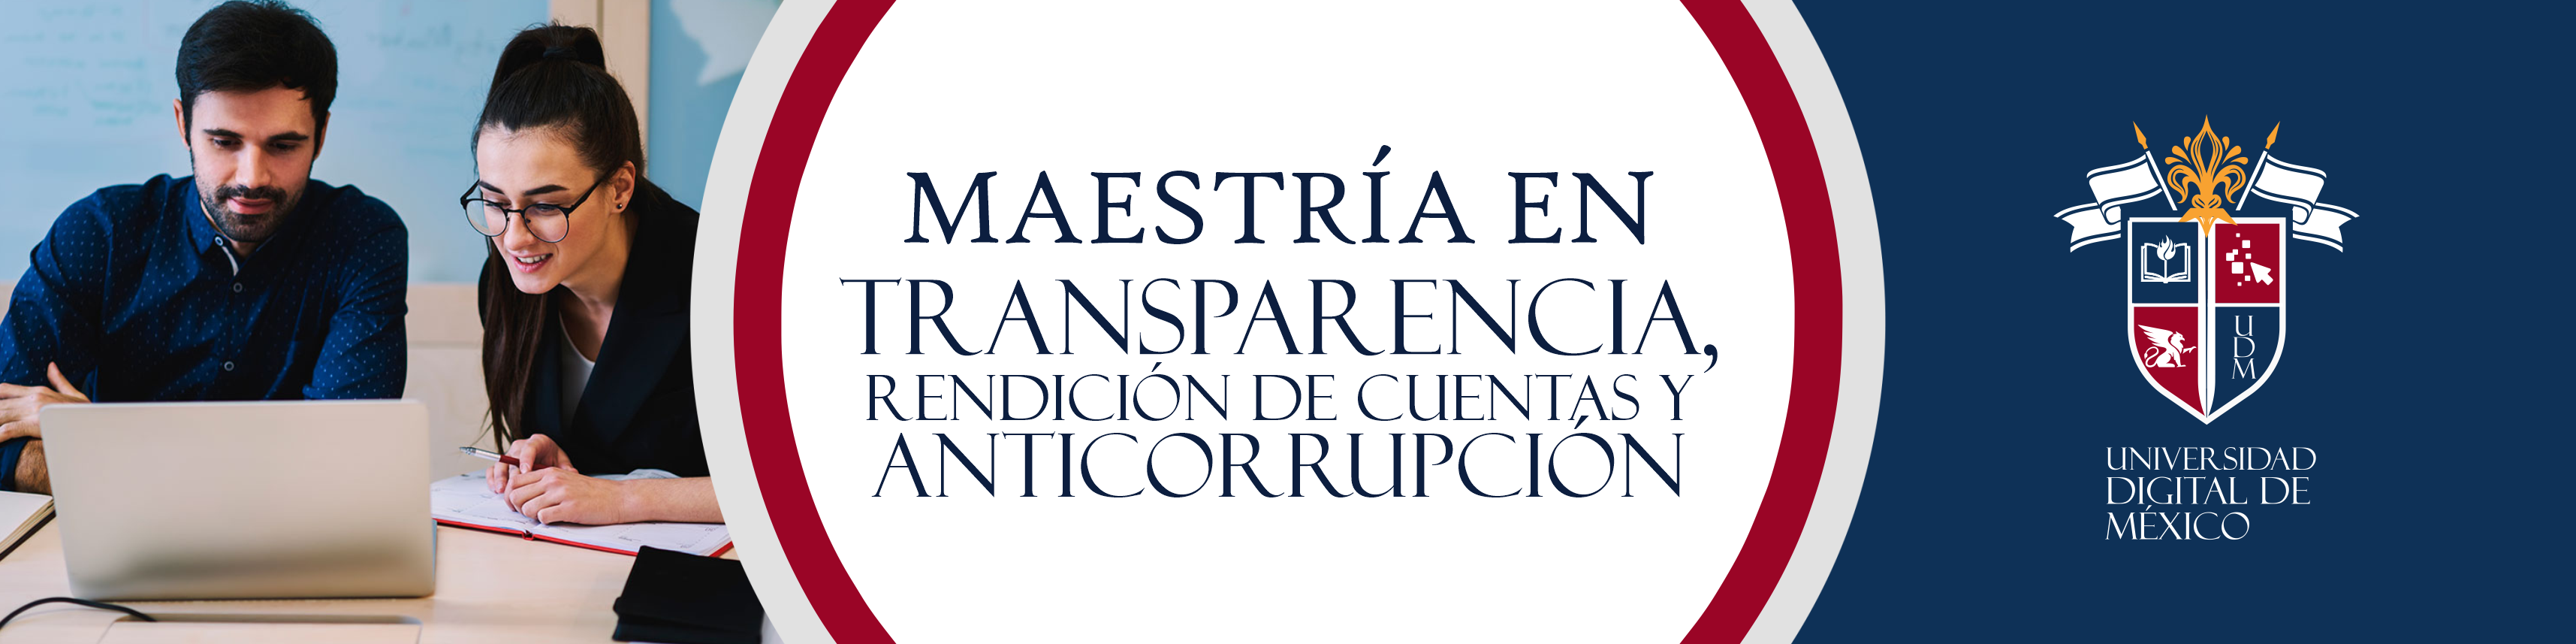 Maestría en Transparencia, Rendición de Cuentas y Anticorrupción.